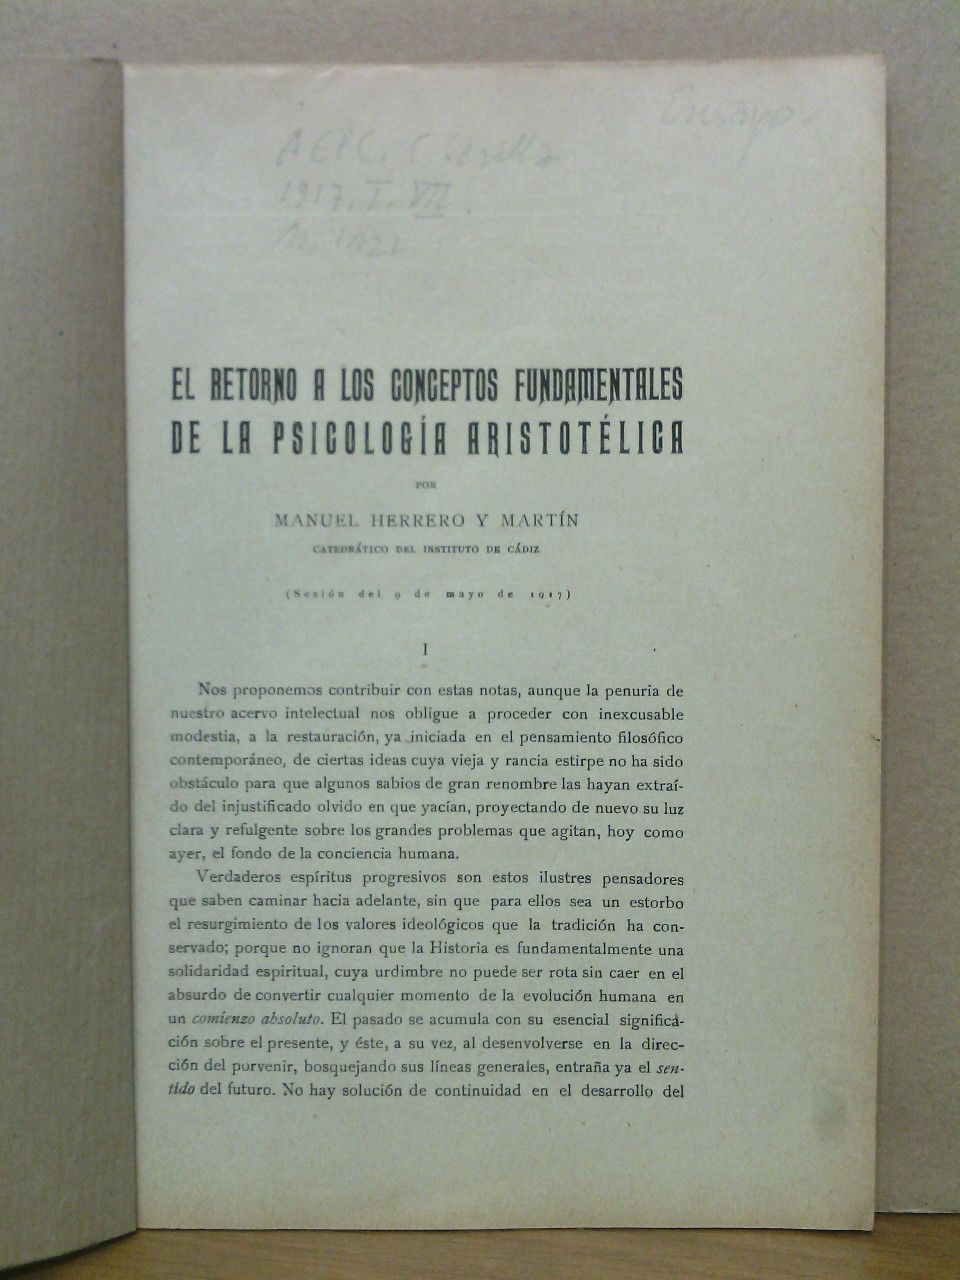 HERRERO Y MARTIN, Manuel - El retorno a los conceptos fundamentales de la psicologa aristotlica. (Sesin del 9 de Mayo de 1917)